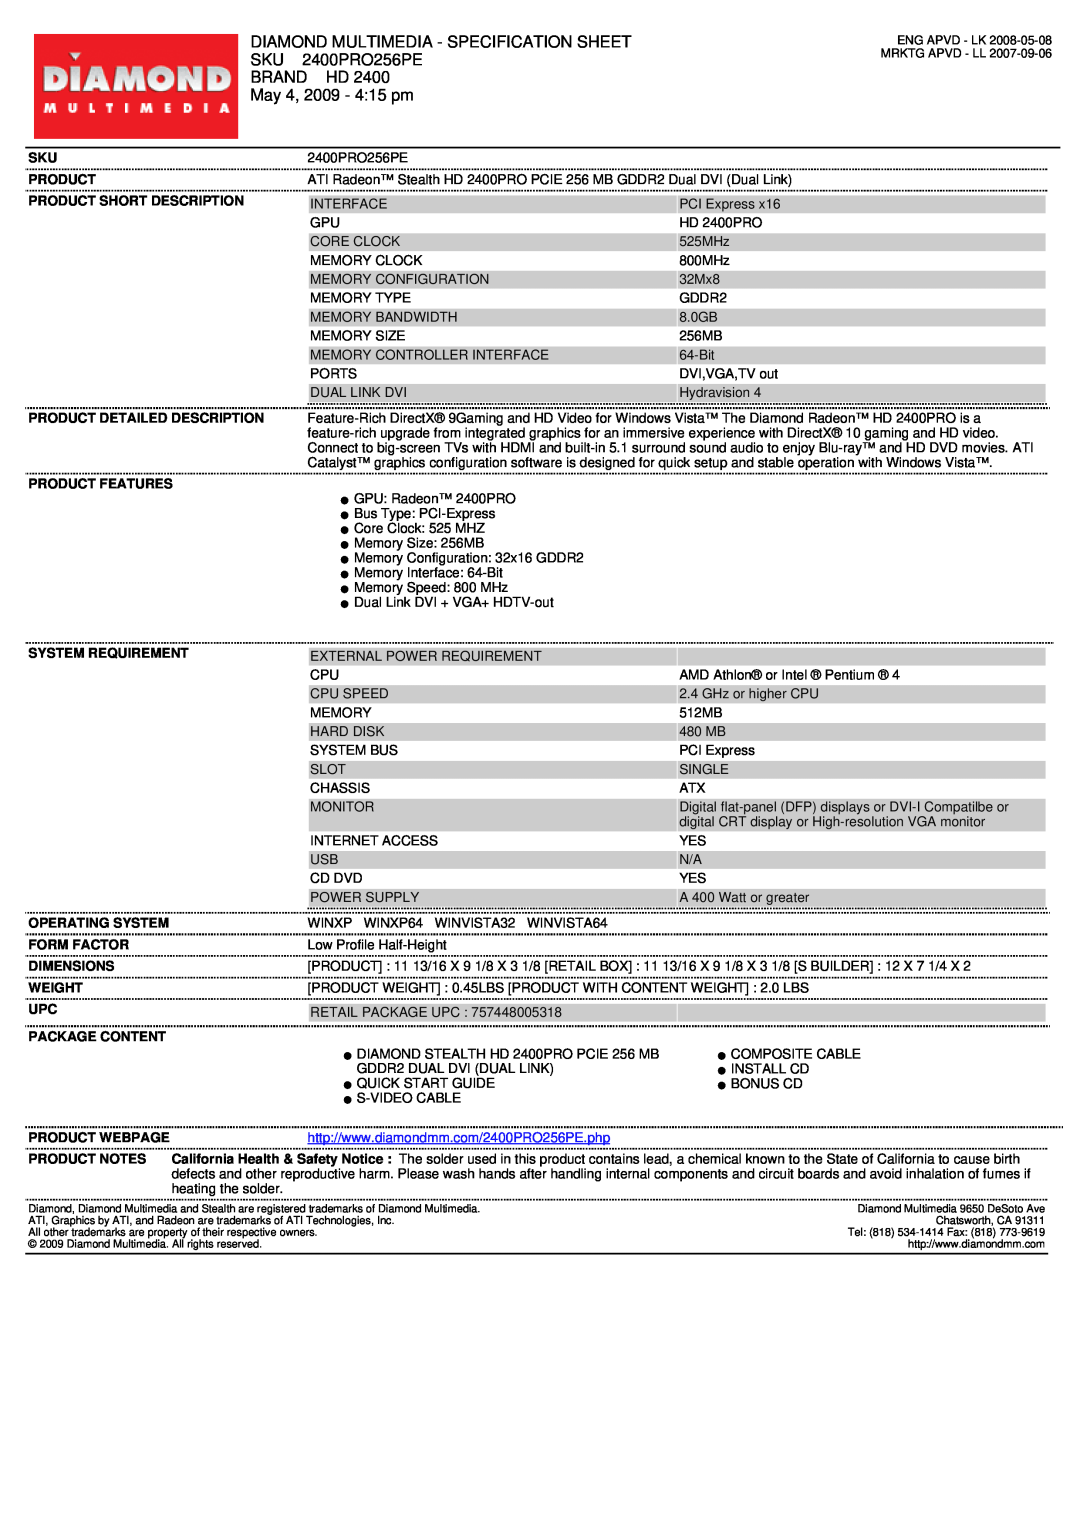 Diamond Multimedia 2400PRO256PE specifications Diamond Multimedia - Specification Sheet, Brand Hd, May 4, 2009 - 415 pm 